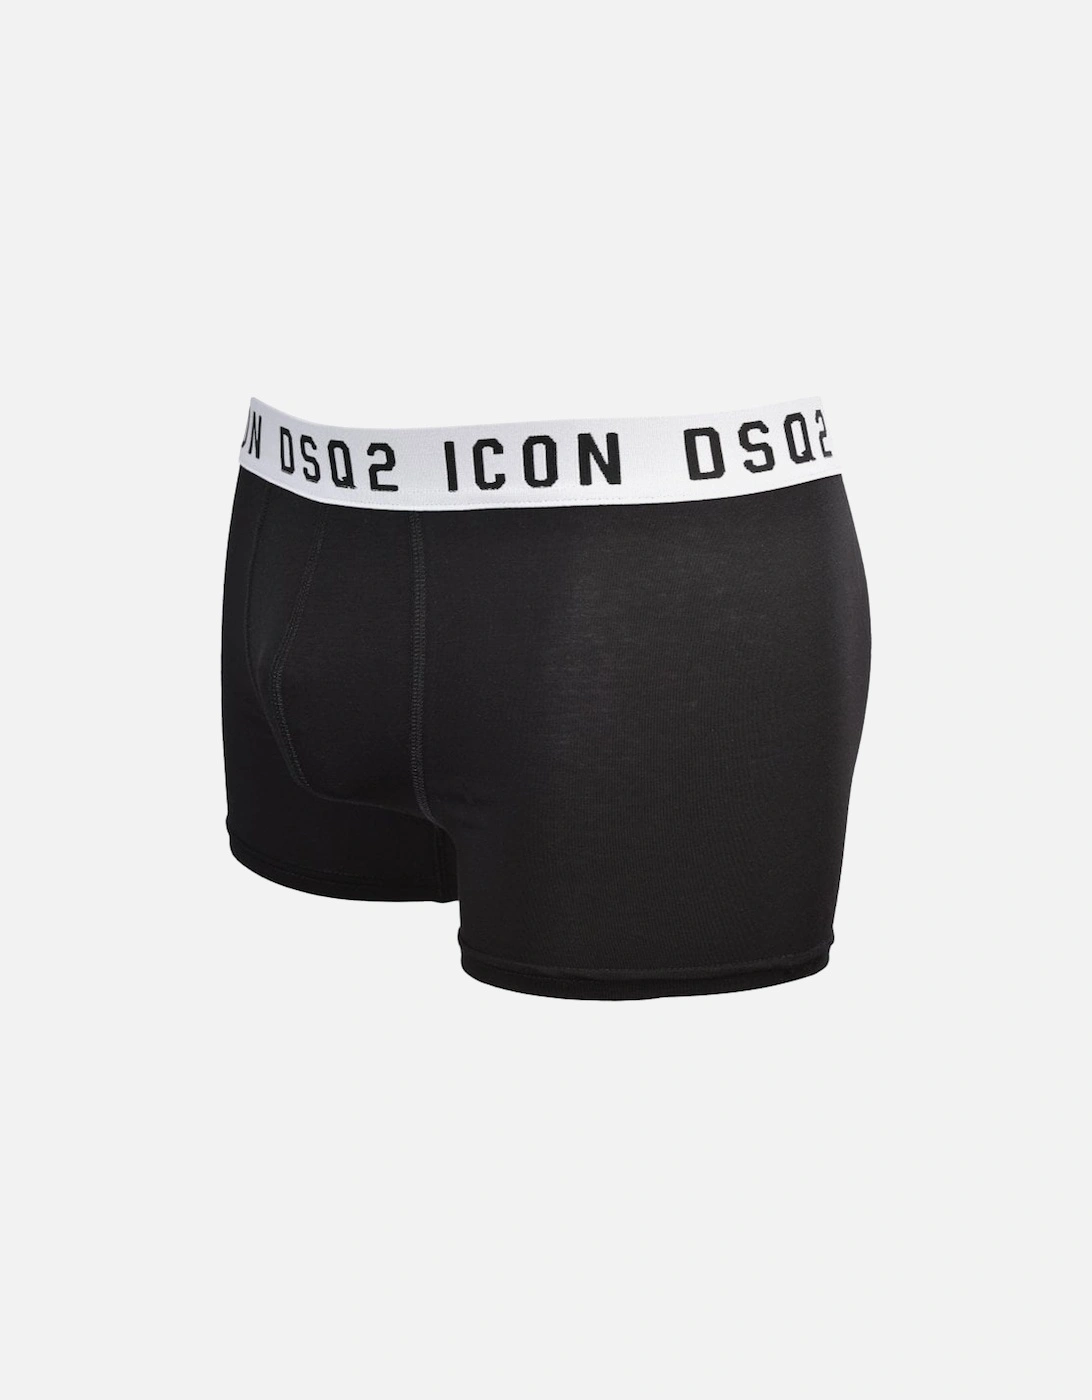 ICON DSQ2 Boxer Trunk, Black/white